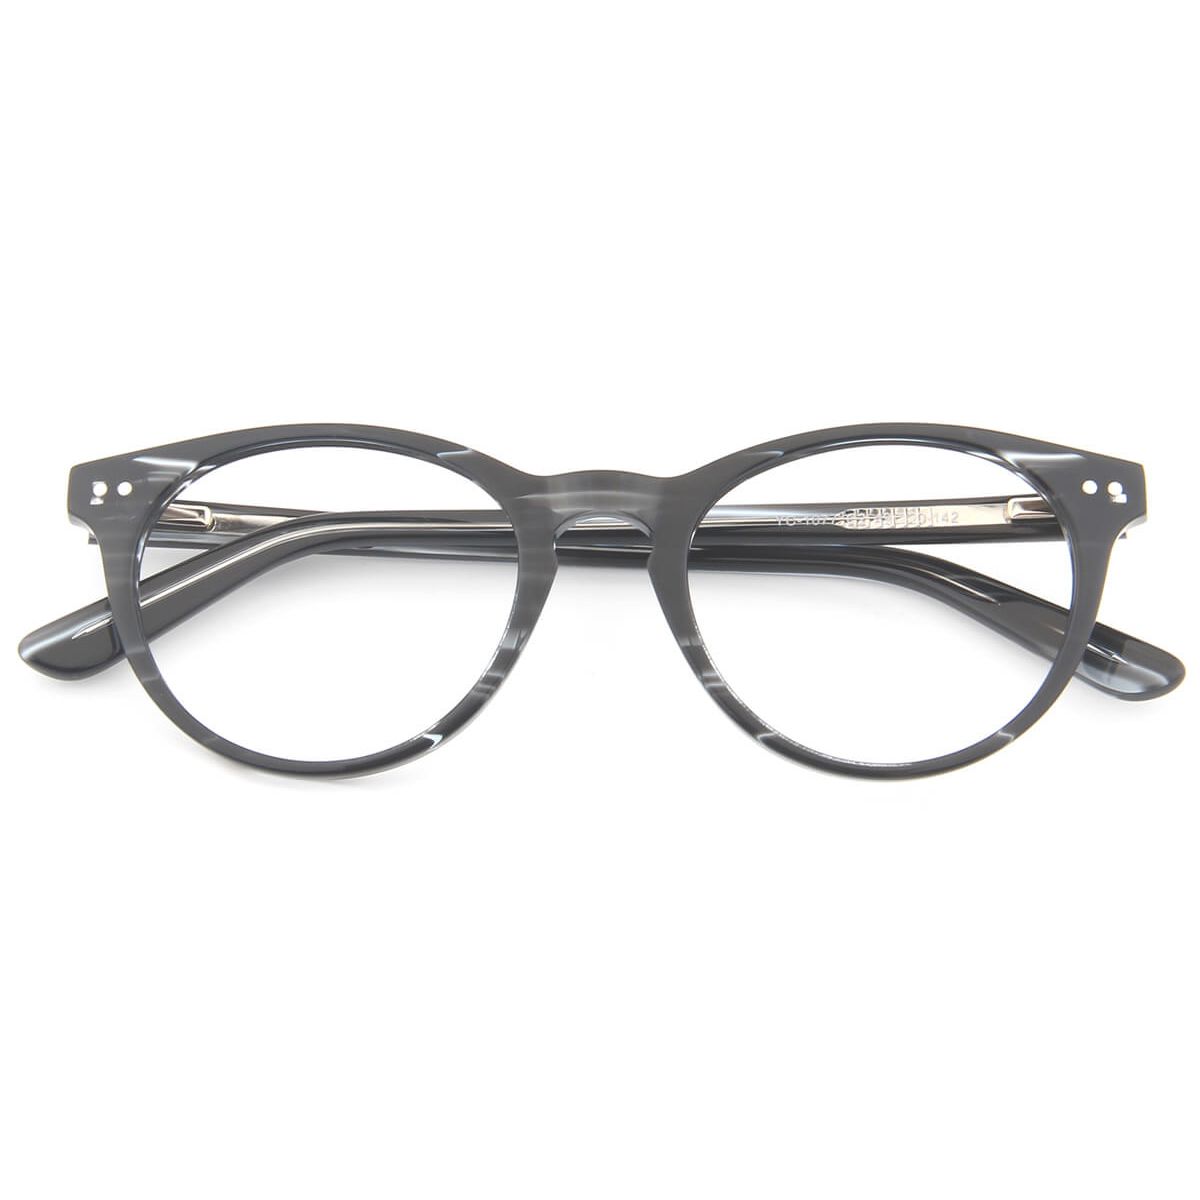 YC-1077 Oval Striped Eyeglasses Frames | Leoptique